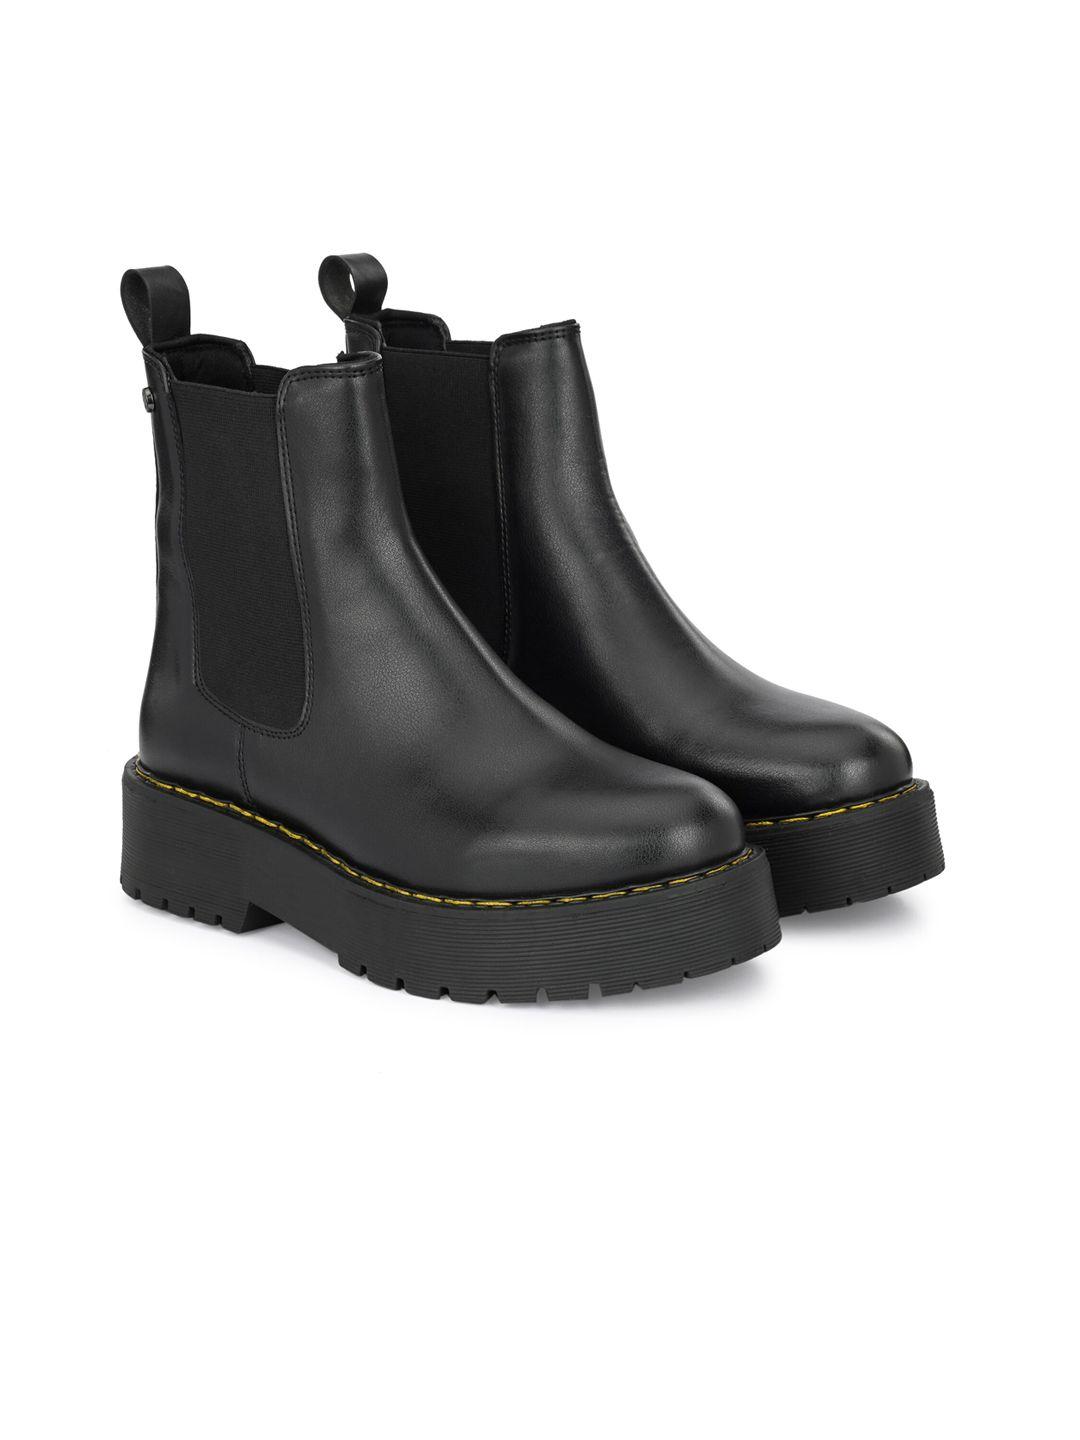 delize-men-mid-top-vegan-leather-chelsea-boots